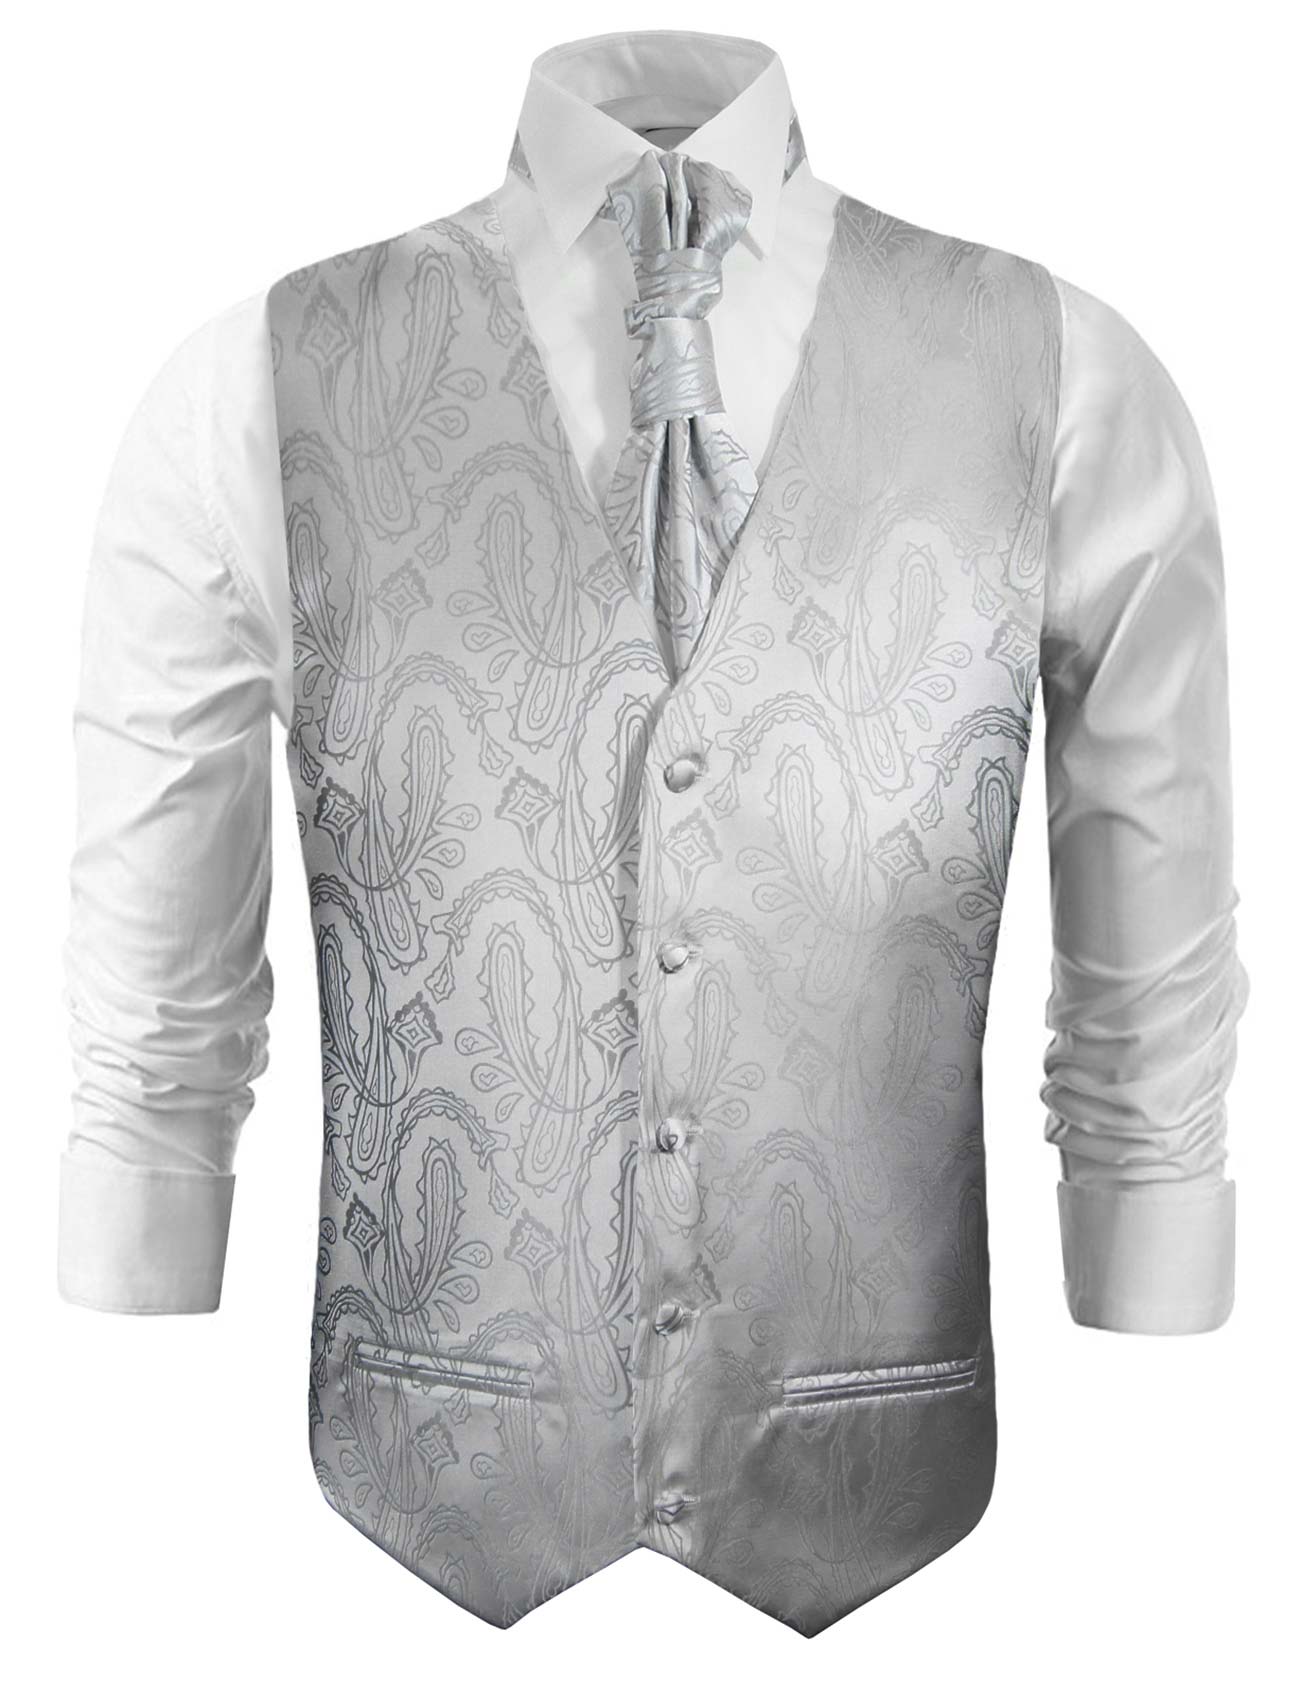 Men's Wedding Waistcoats In Silver 